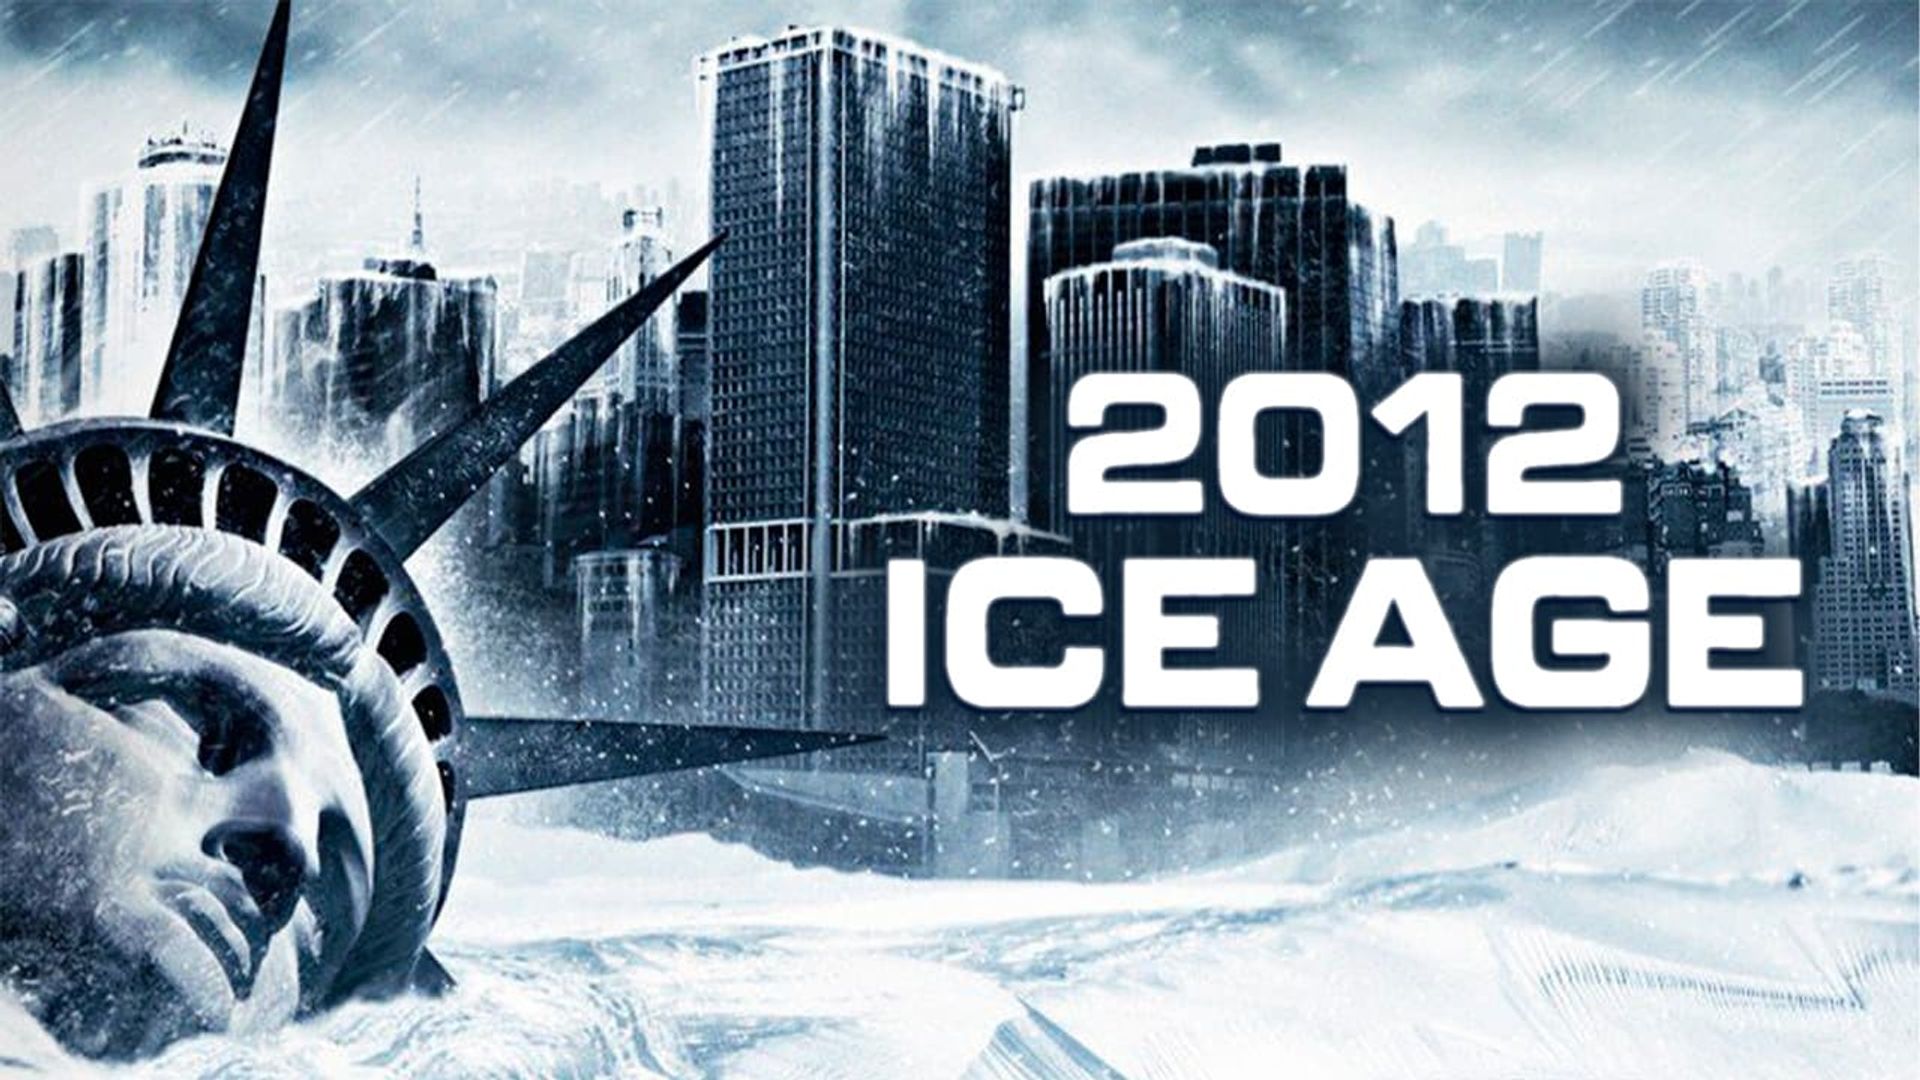 2012: Ice Age background